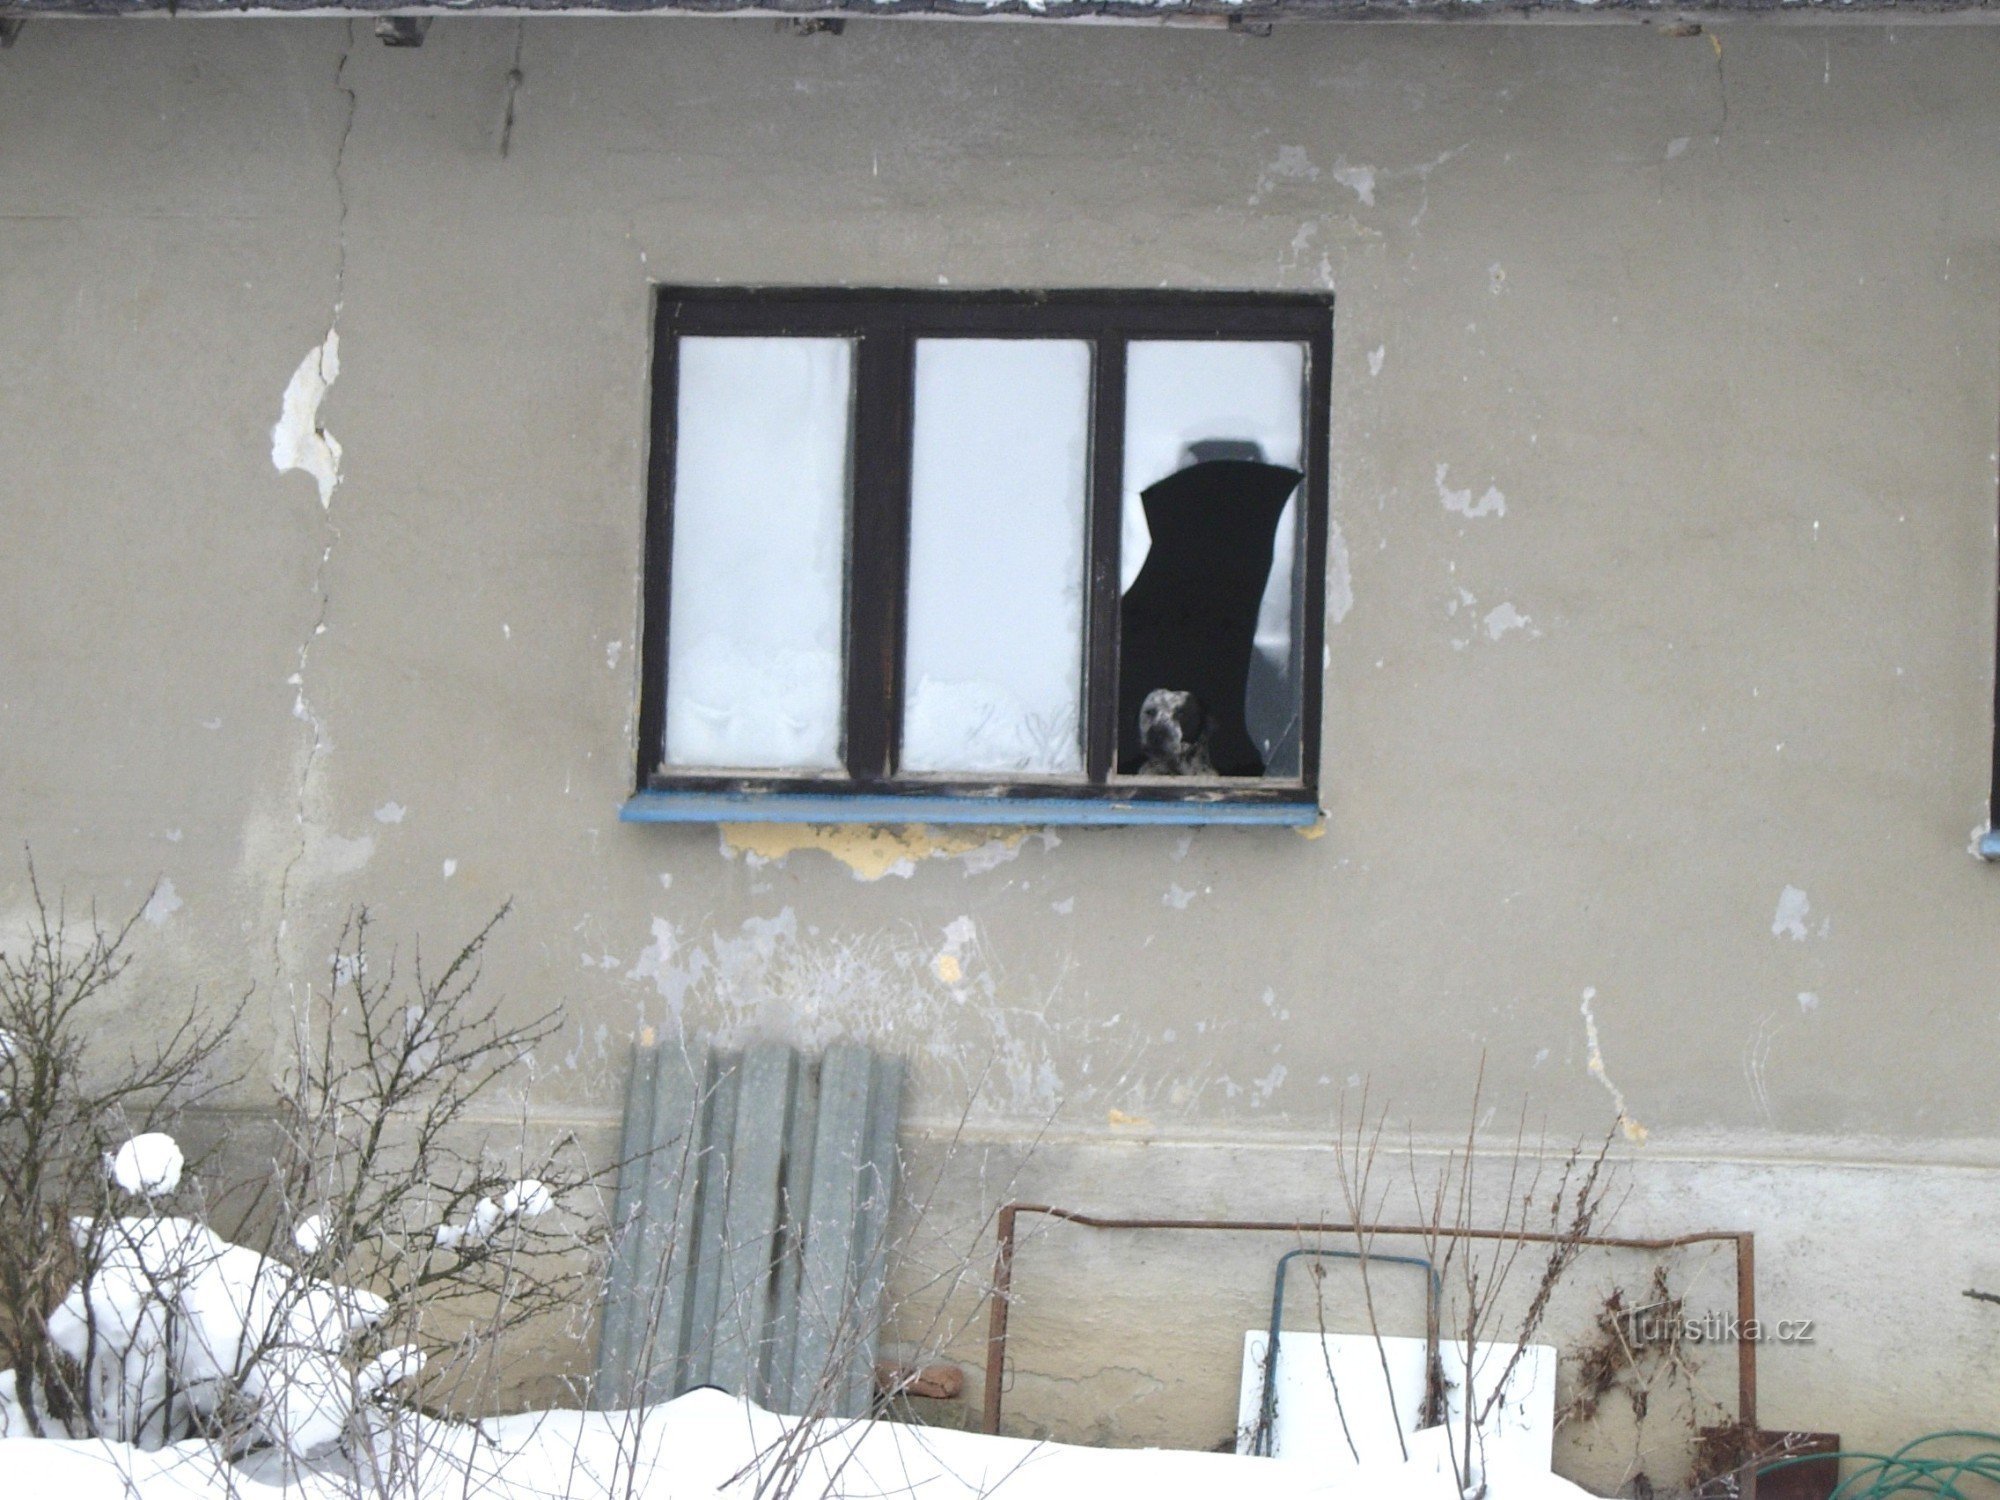 El casero mira por la ventana... (claros de Želechovice)